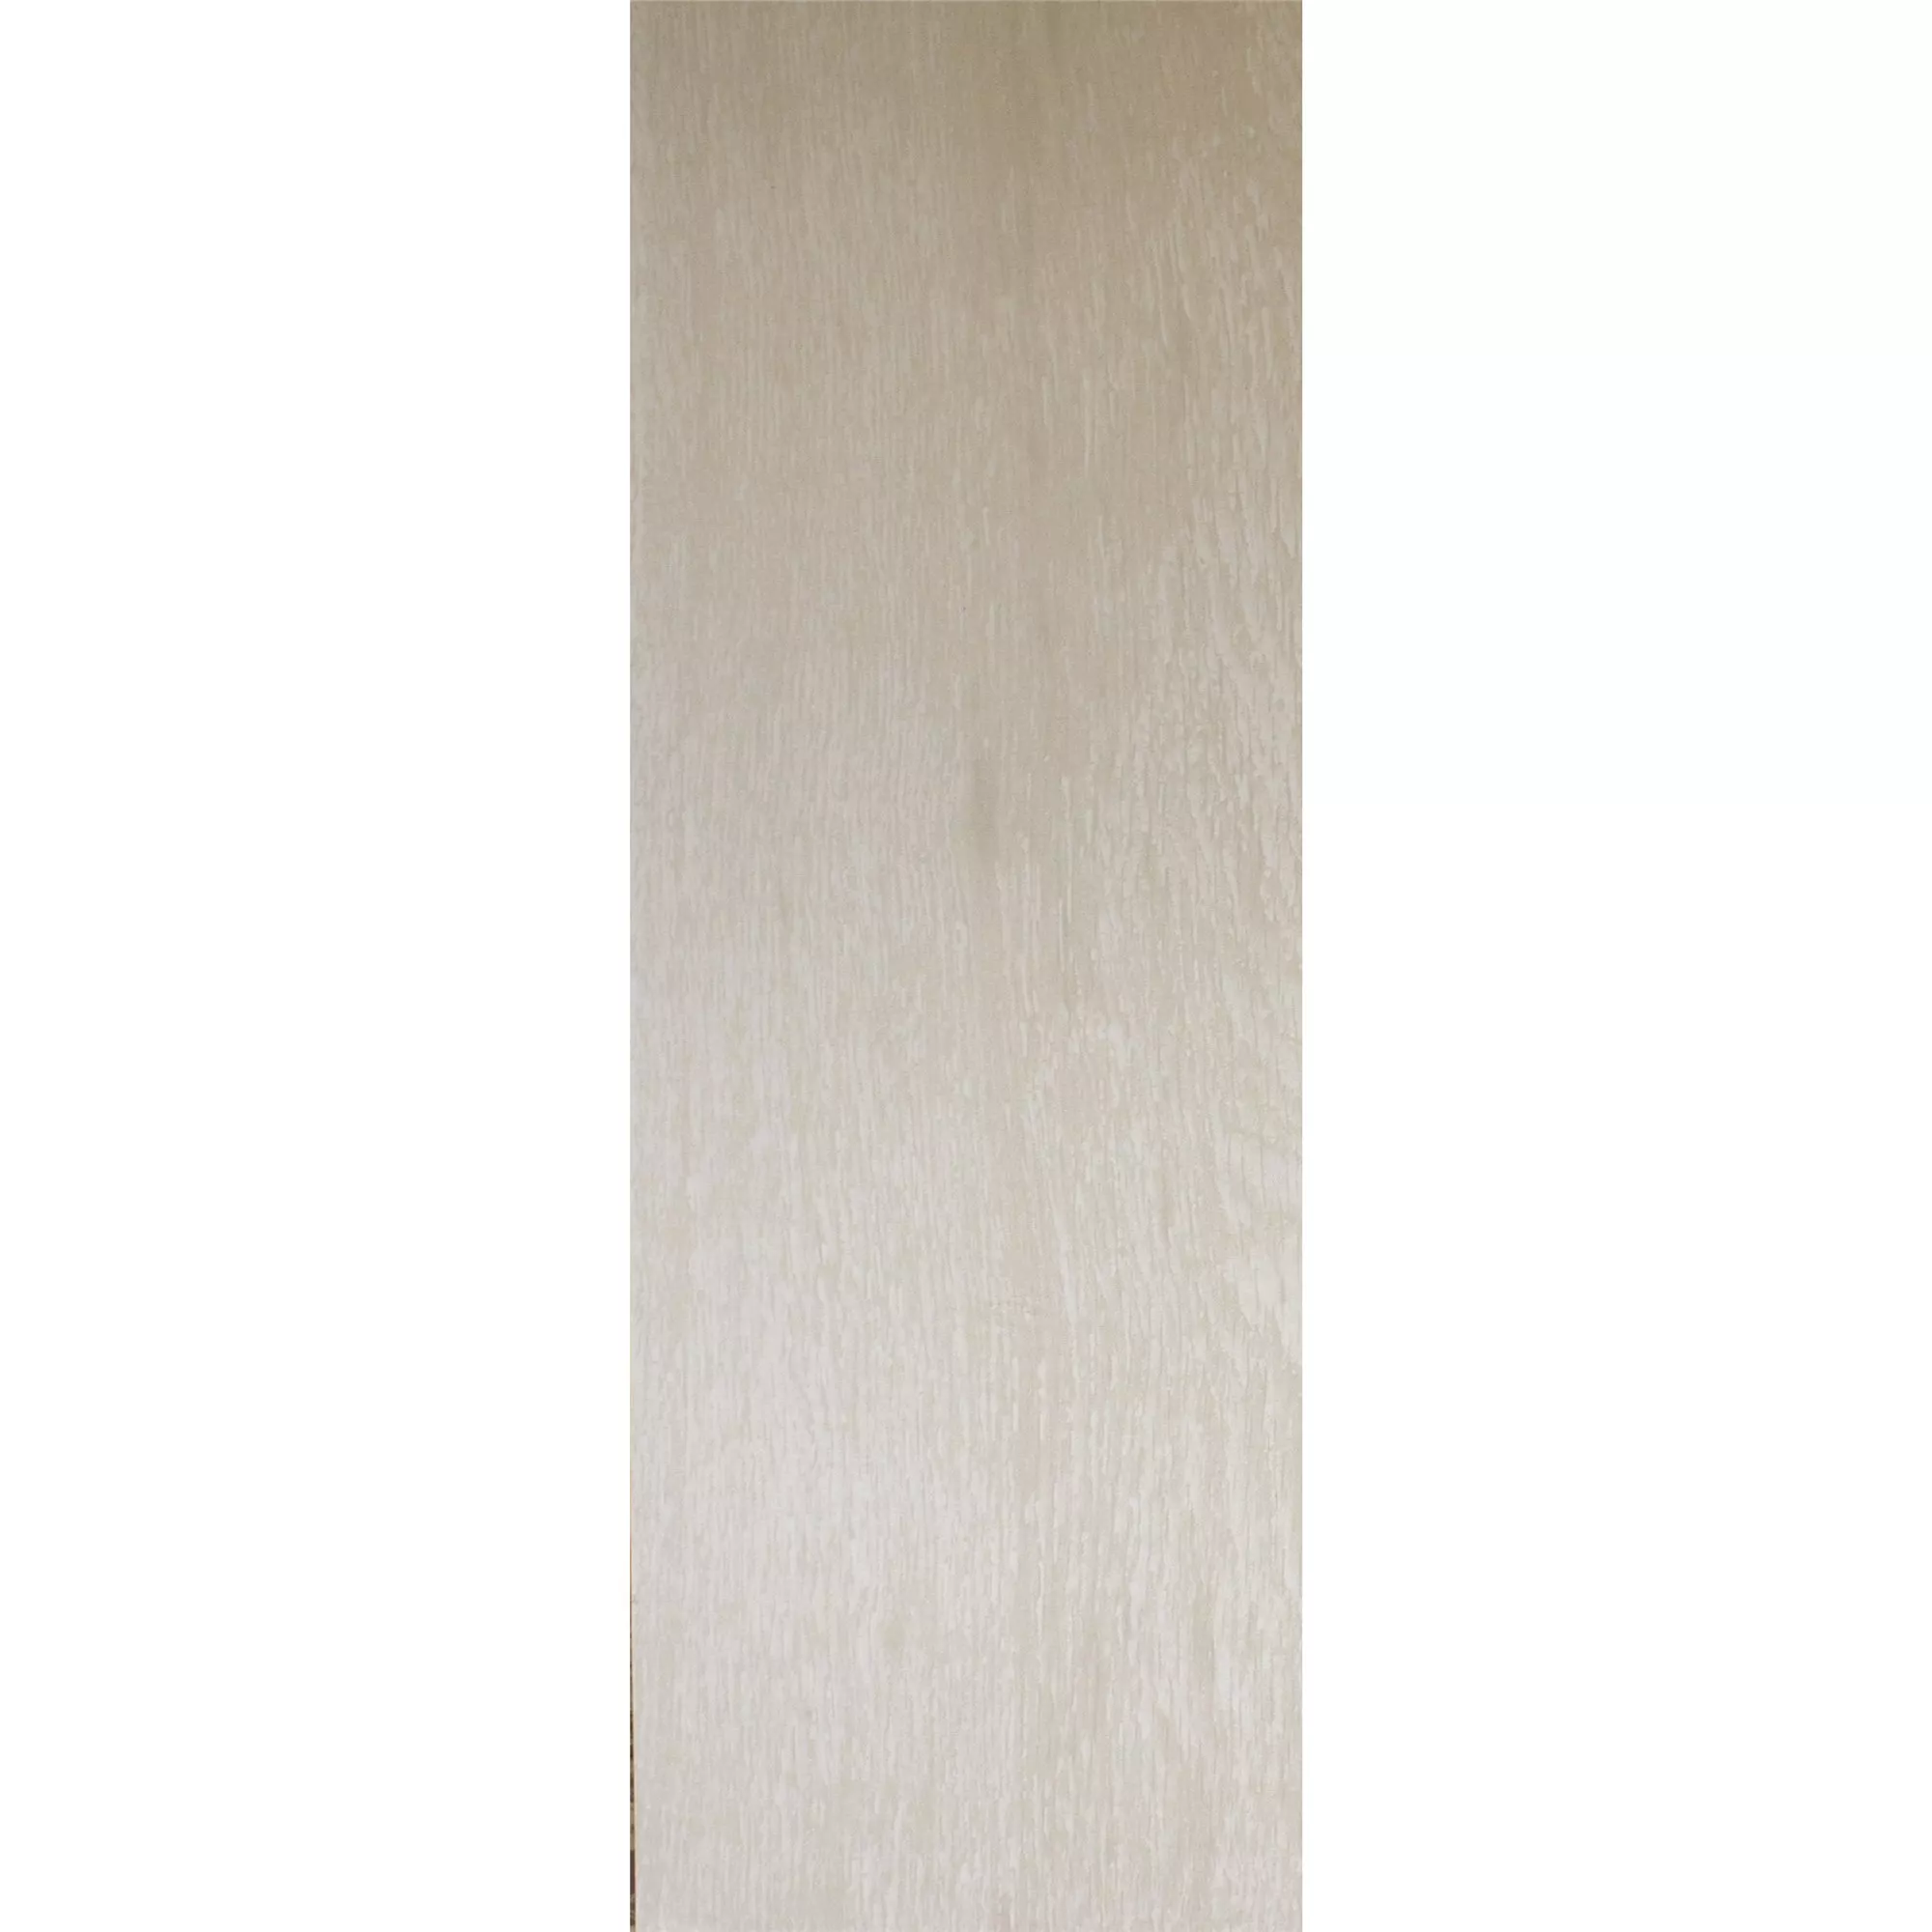 Model Gresie Herakles Aspect De Lemn White 20x120cm